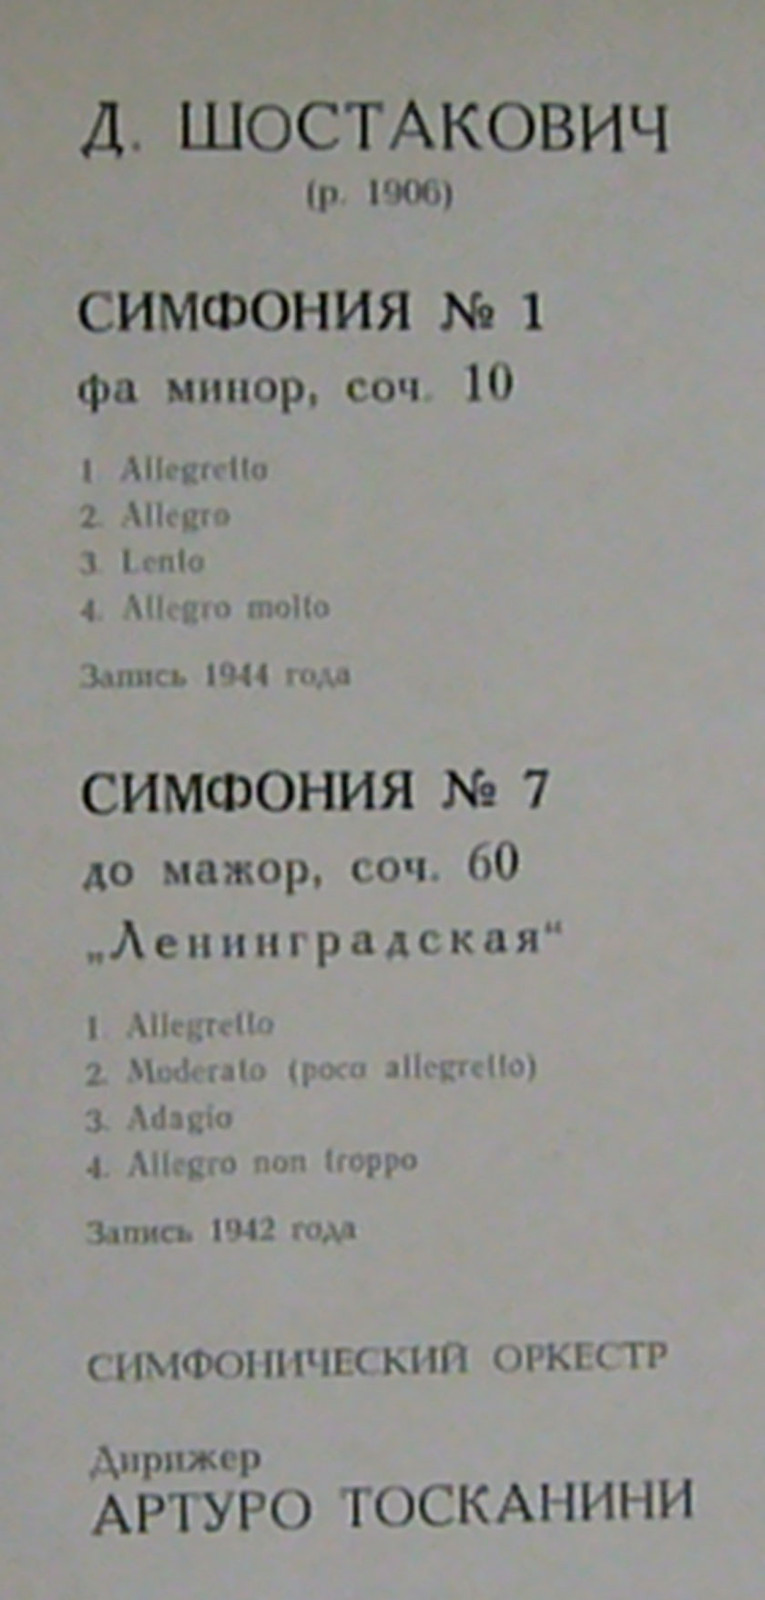 Д. ШОСТАКОВИЧ Симфонии № 1, № 7 (А. Тосканини)